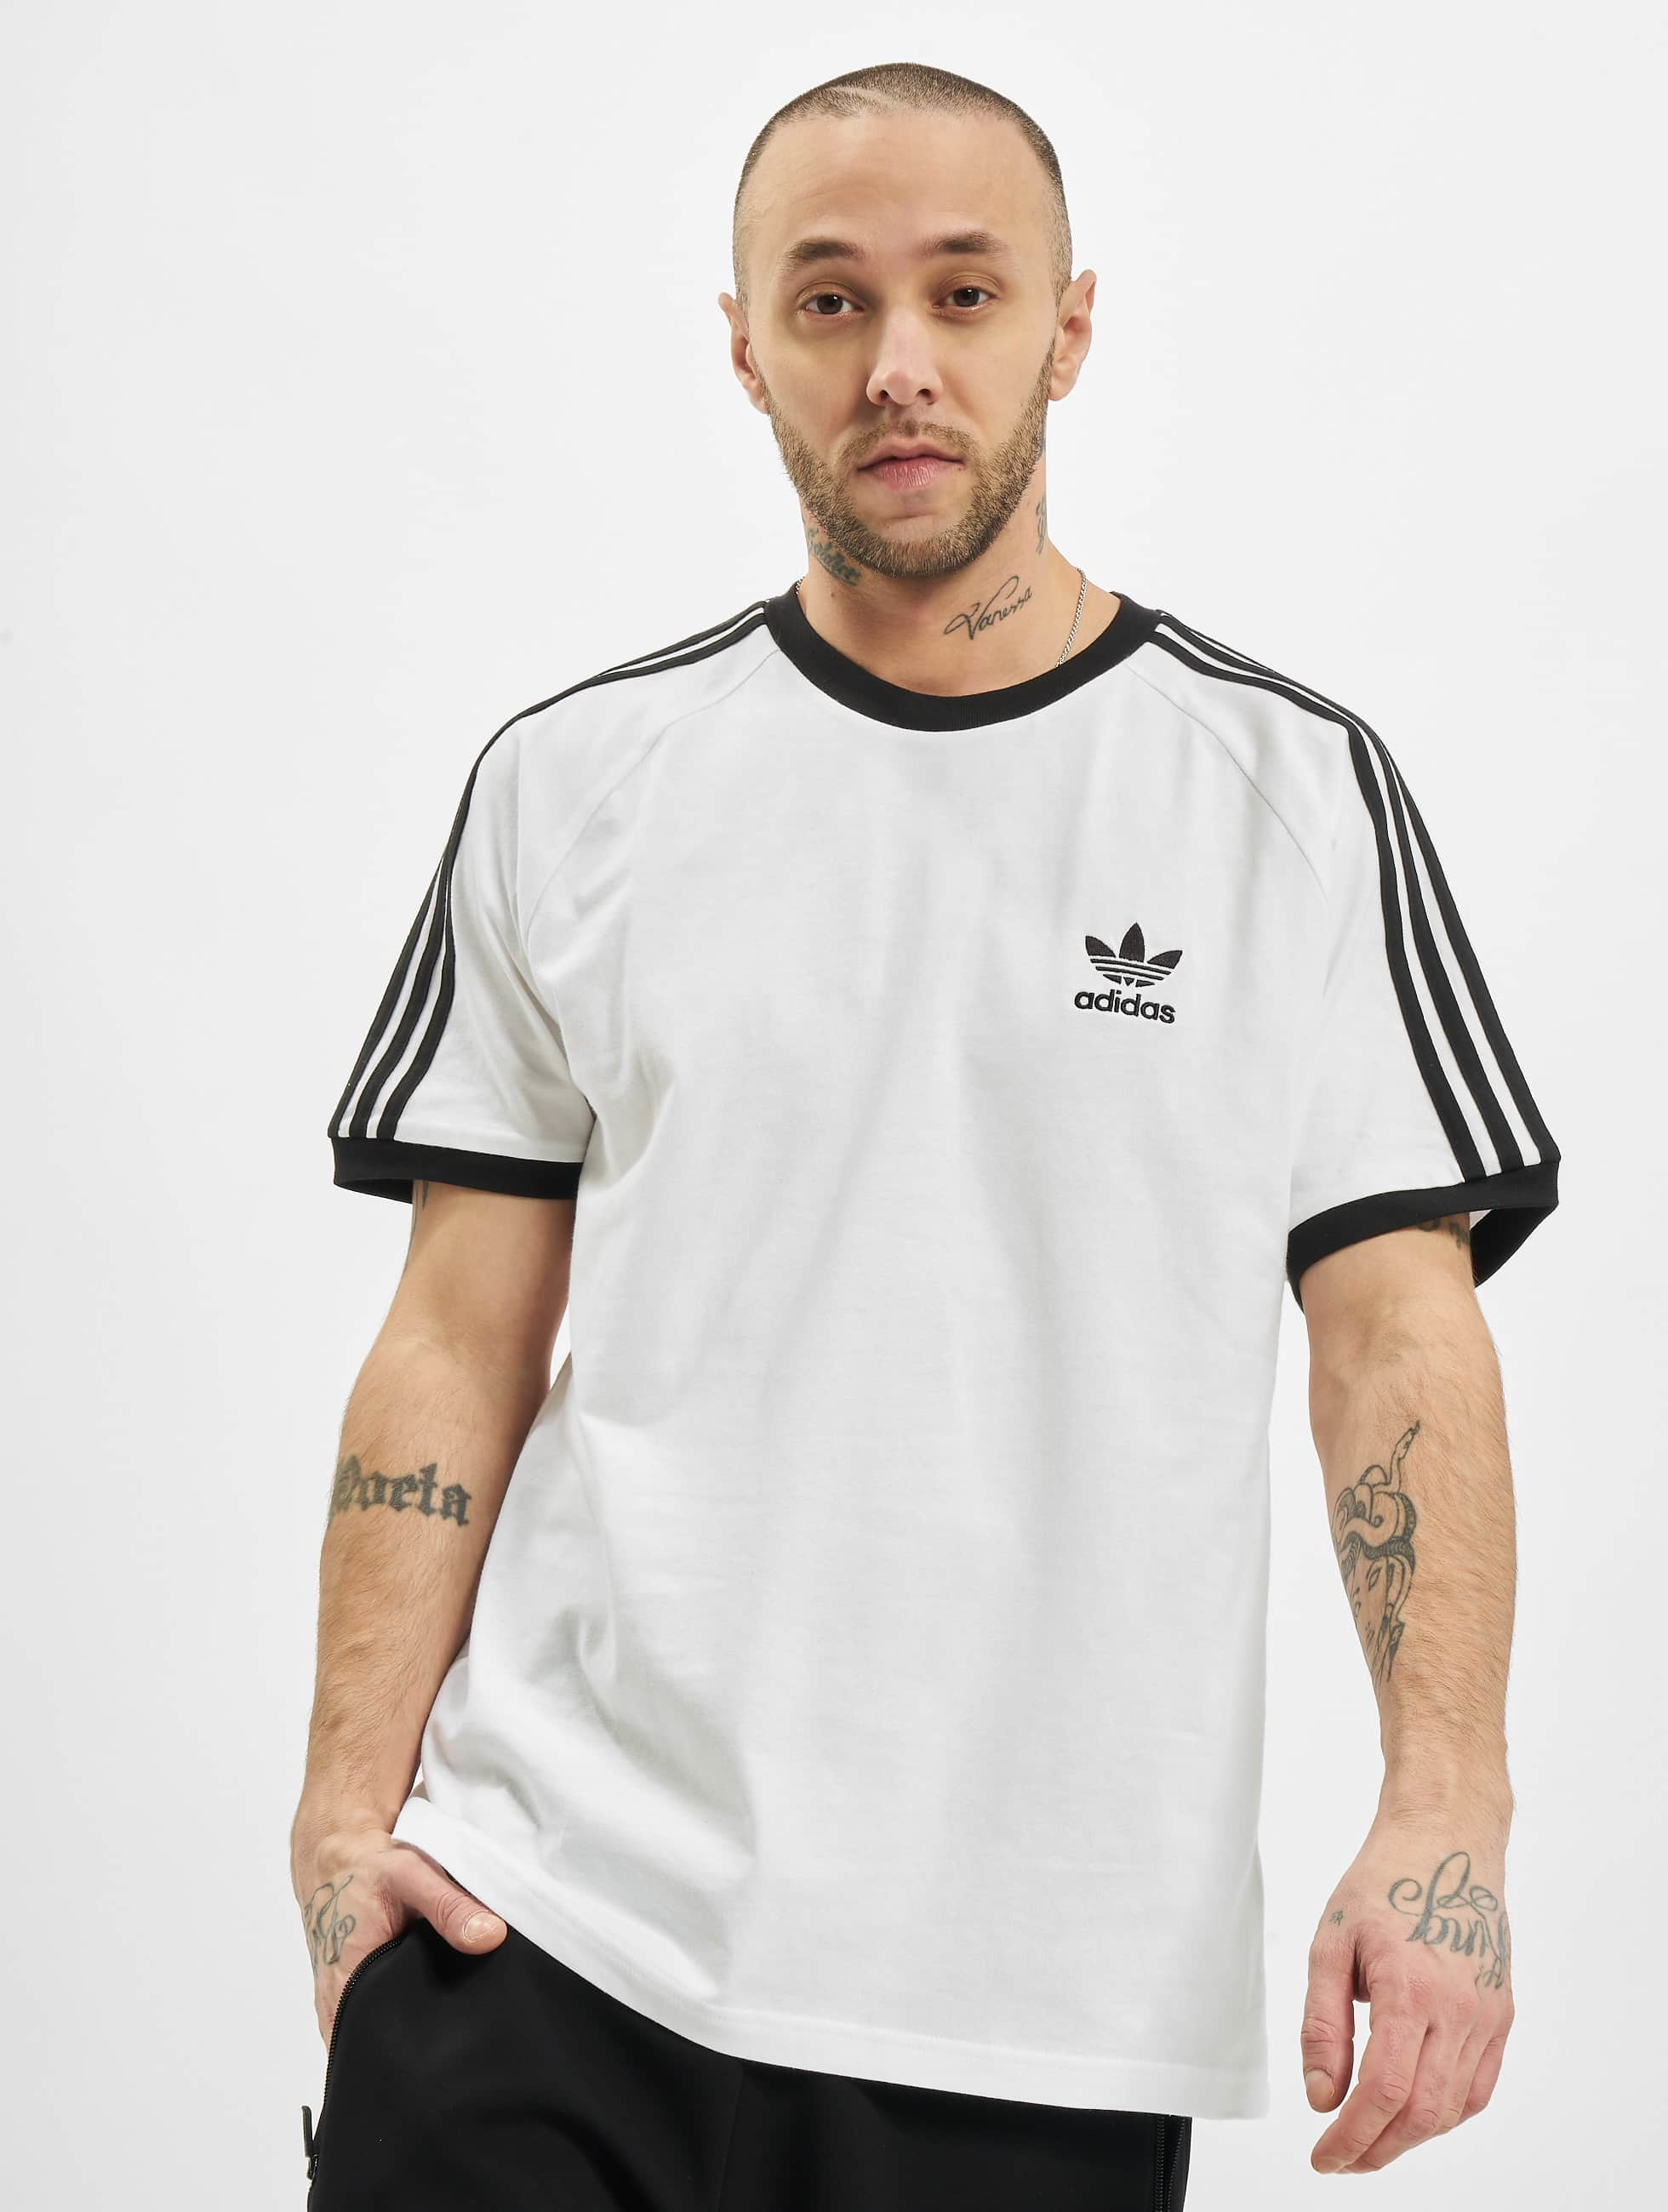 Specificiteit zich zorgen maken Mew Mew adidas Originals bovenstuk / t-shirt 3-Stripes in wit 801790